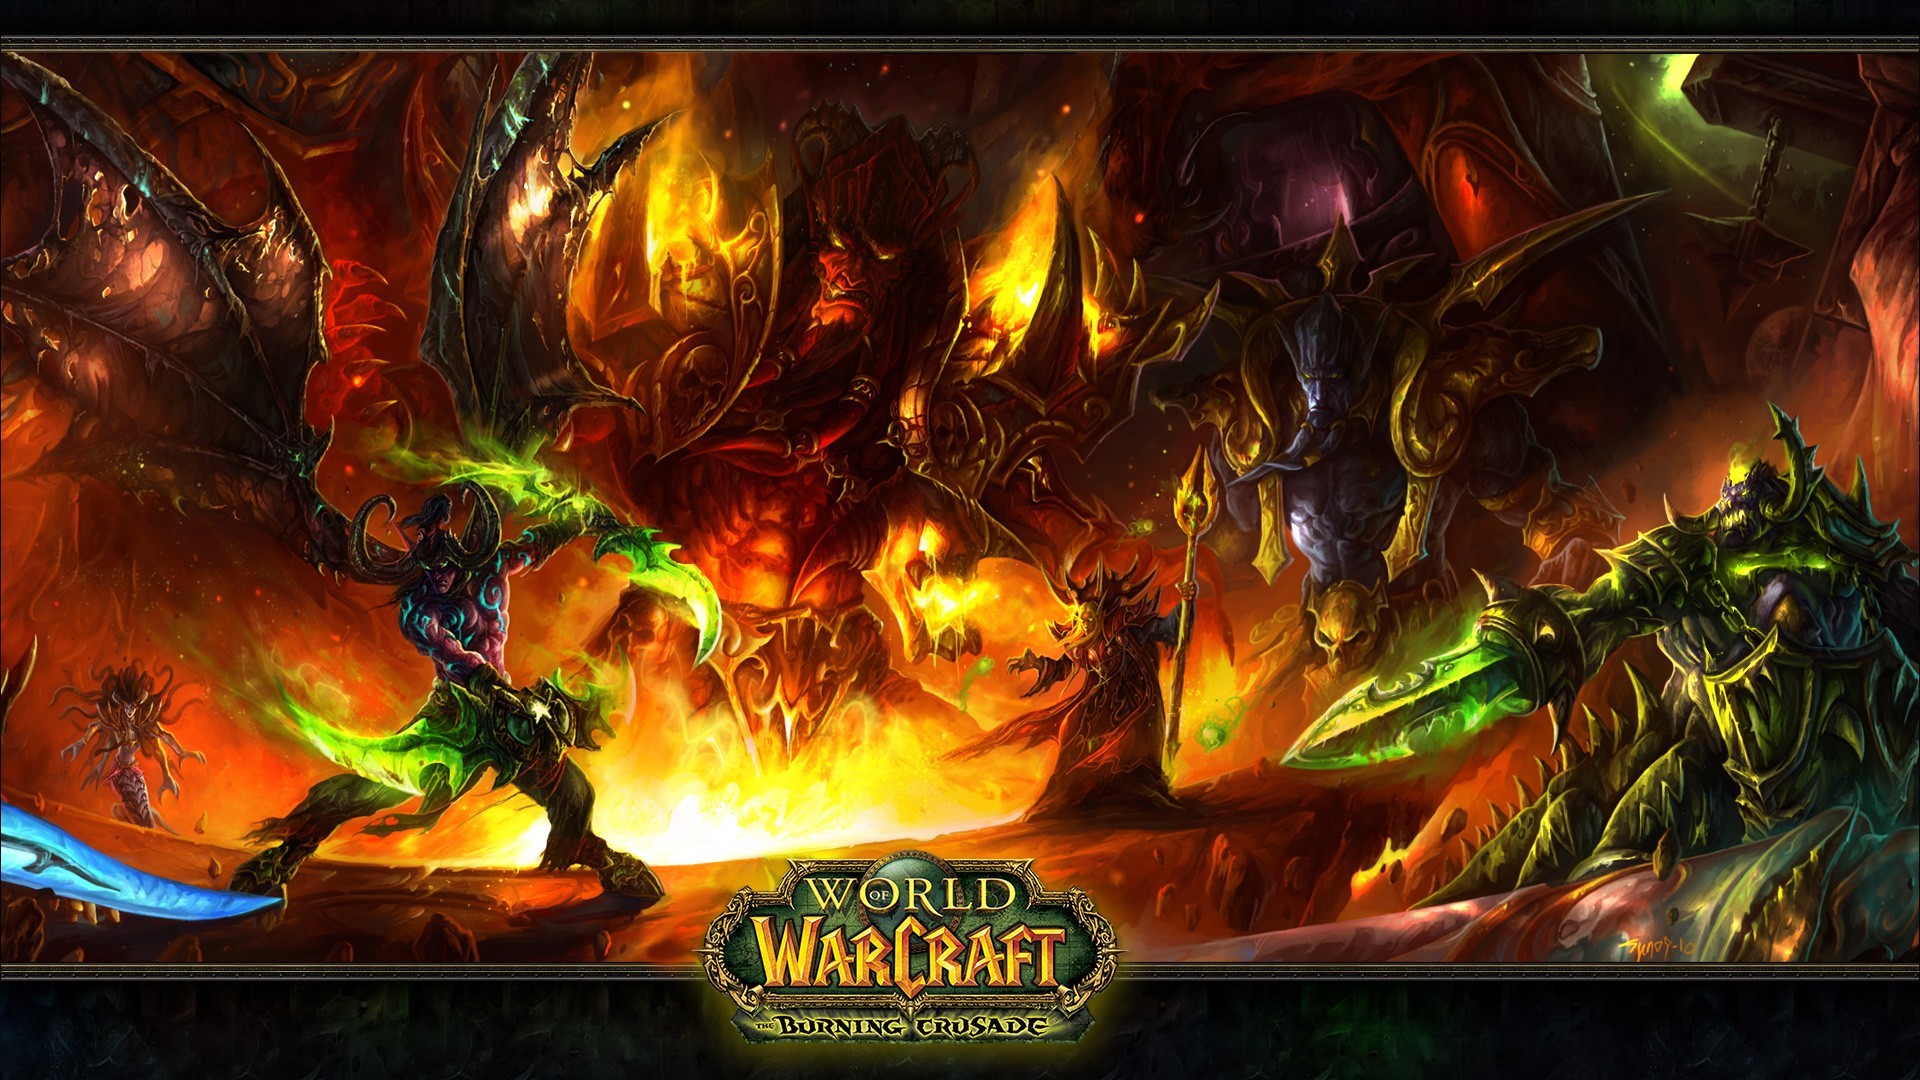 World Of Warcraft Illidan Stormrage Kaelthas World Of Warcraft The Burning Crusade 1920x1080